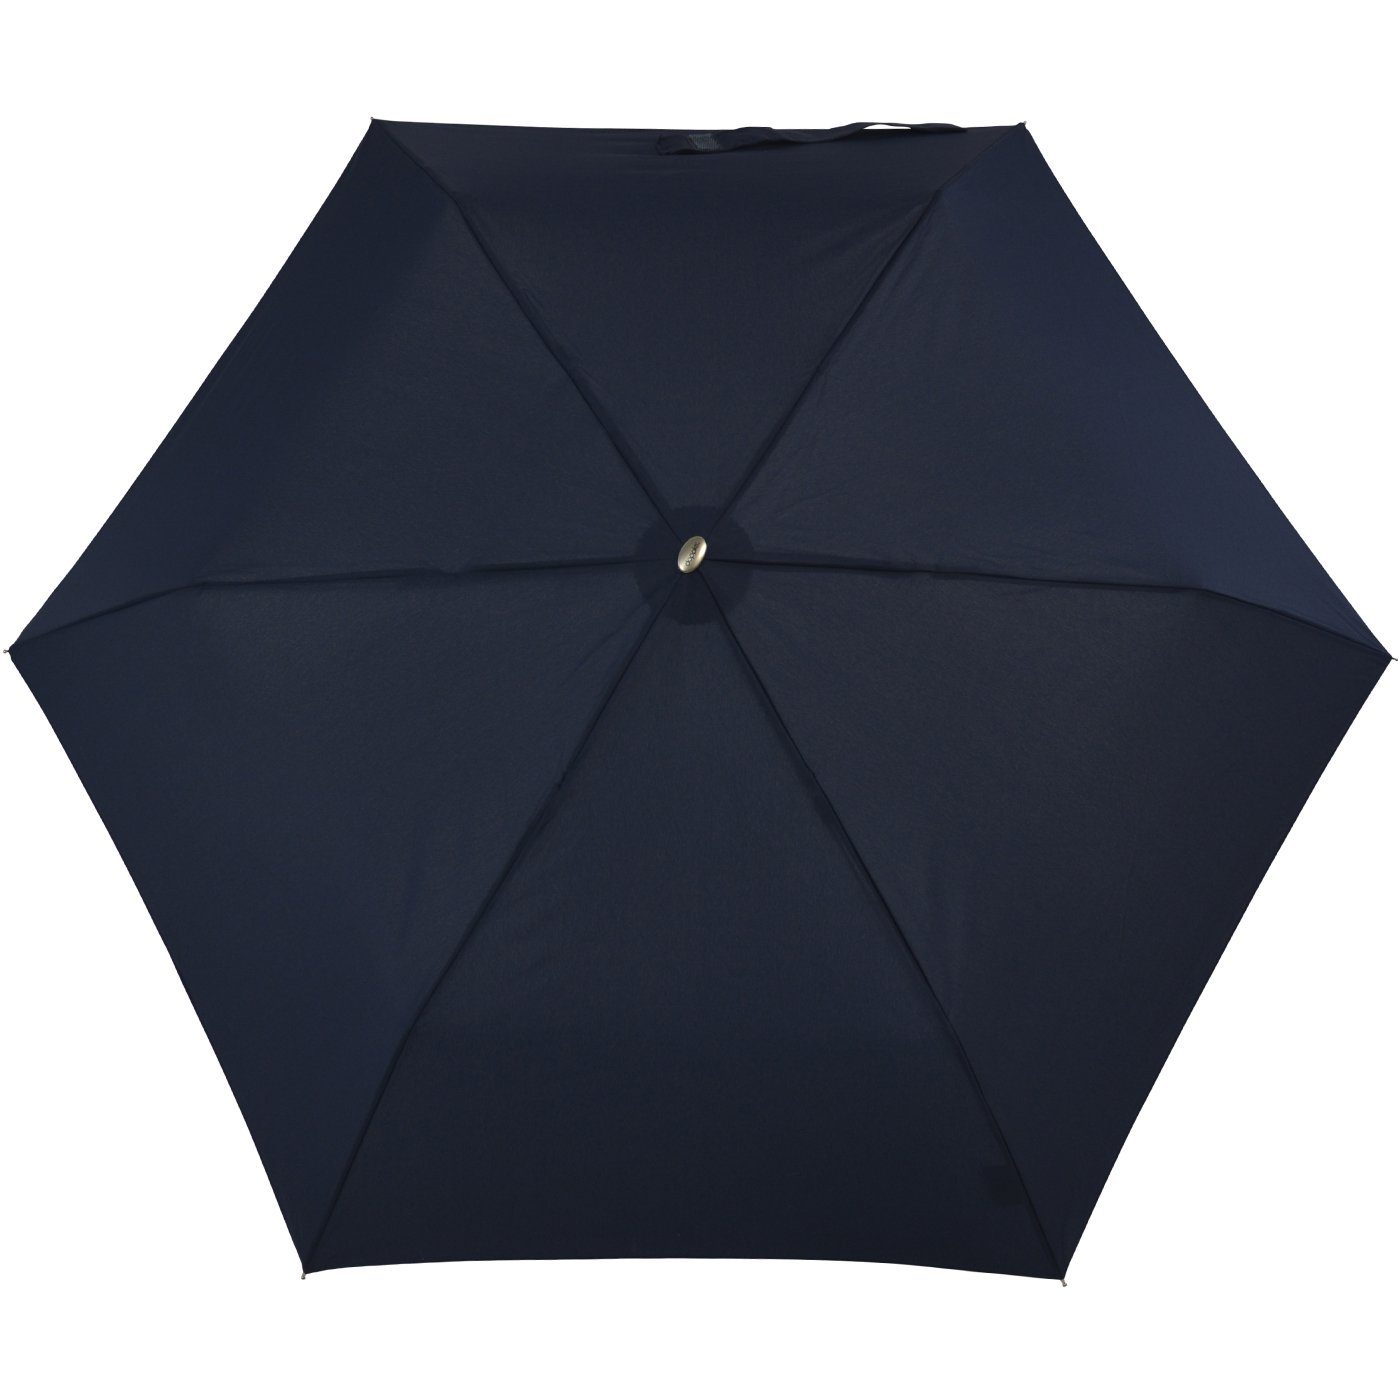 Langregenschirm für treue dieser findet flacher Schirm jede leichter Tasche, doppler® überall Begleiter Platz ein und